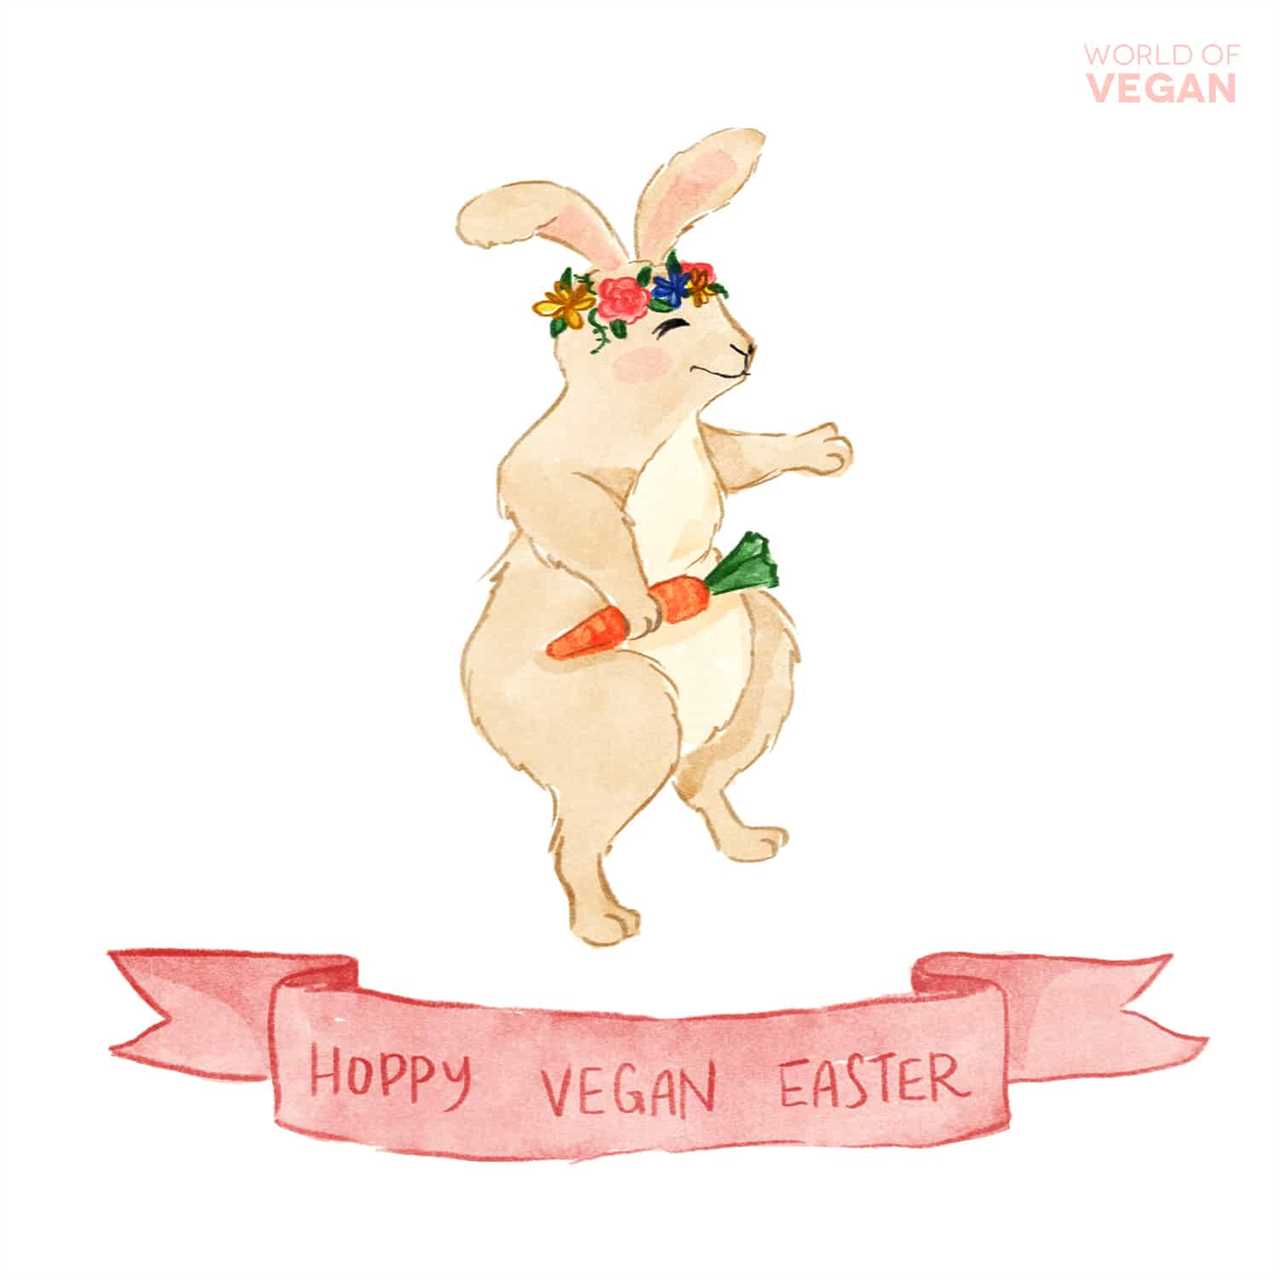 Vegan Easter Bunny in a Flower Crown art illustration that says hoppy vegan easter